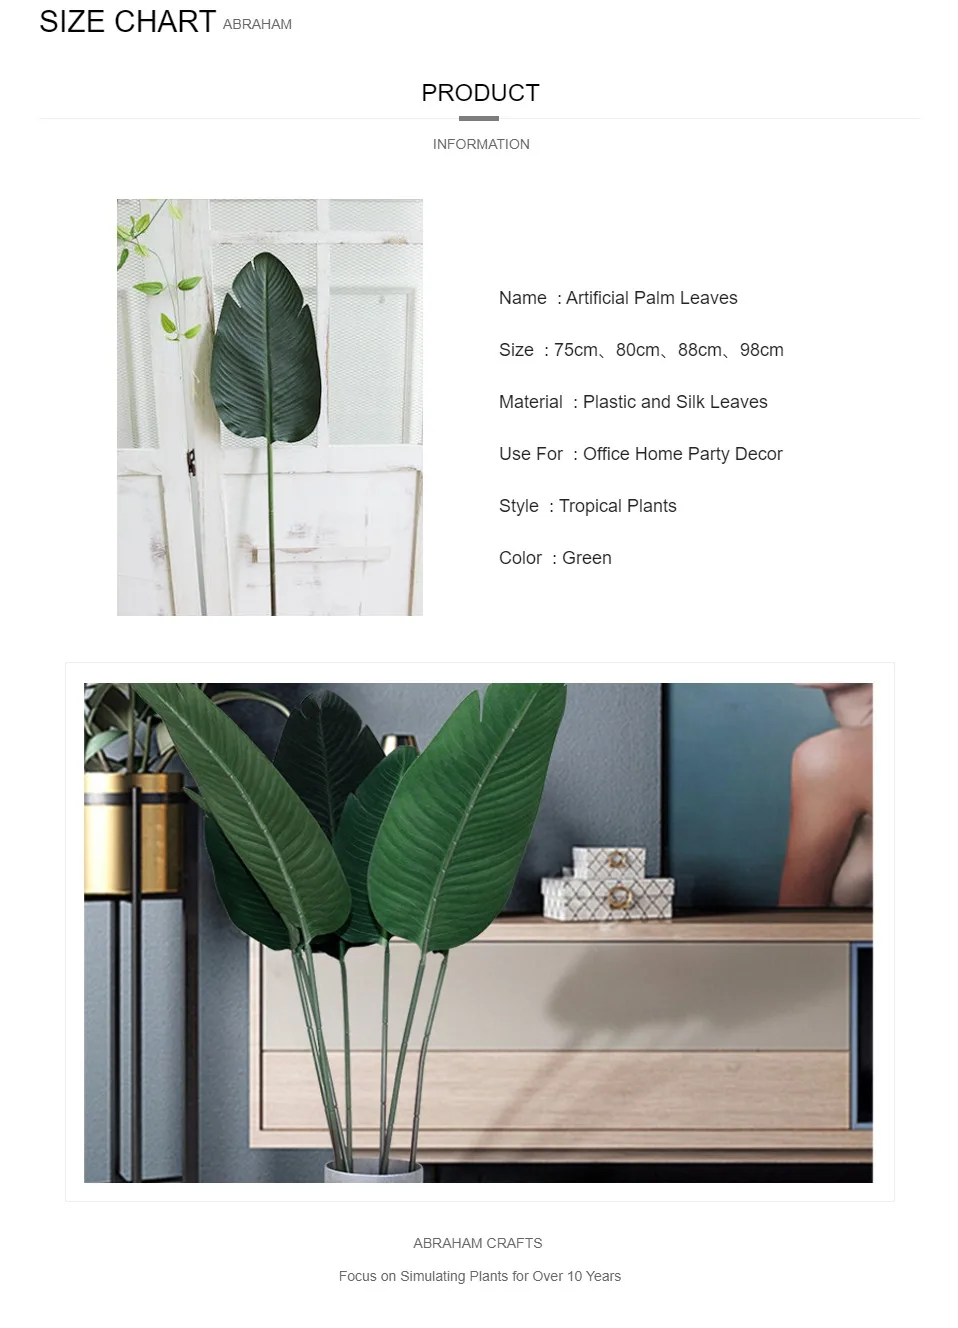 98 см 3 шт. пластиковая Пальма листья тропические большие искусственные пальмовые ветки Зеленые искусственные растения искусственный банан лист для украшения дома и офиса